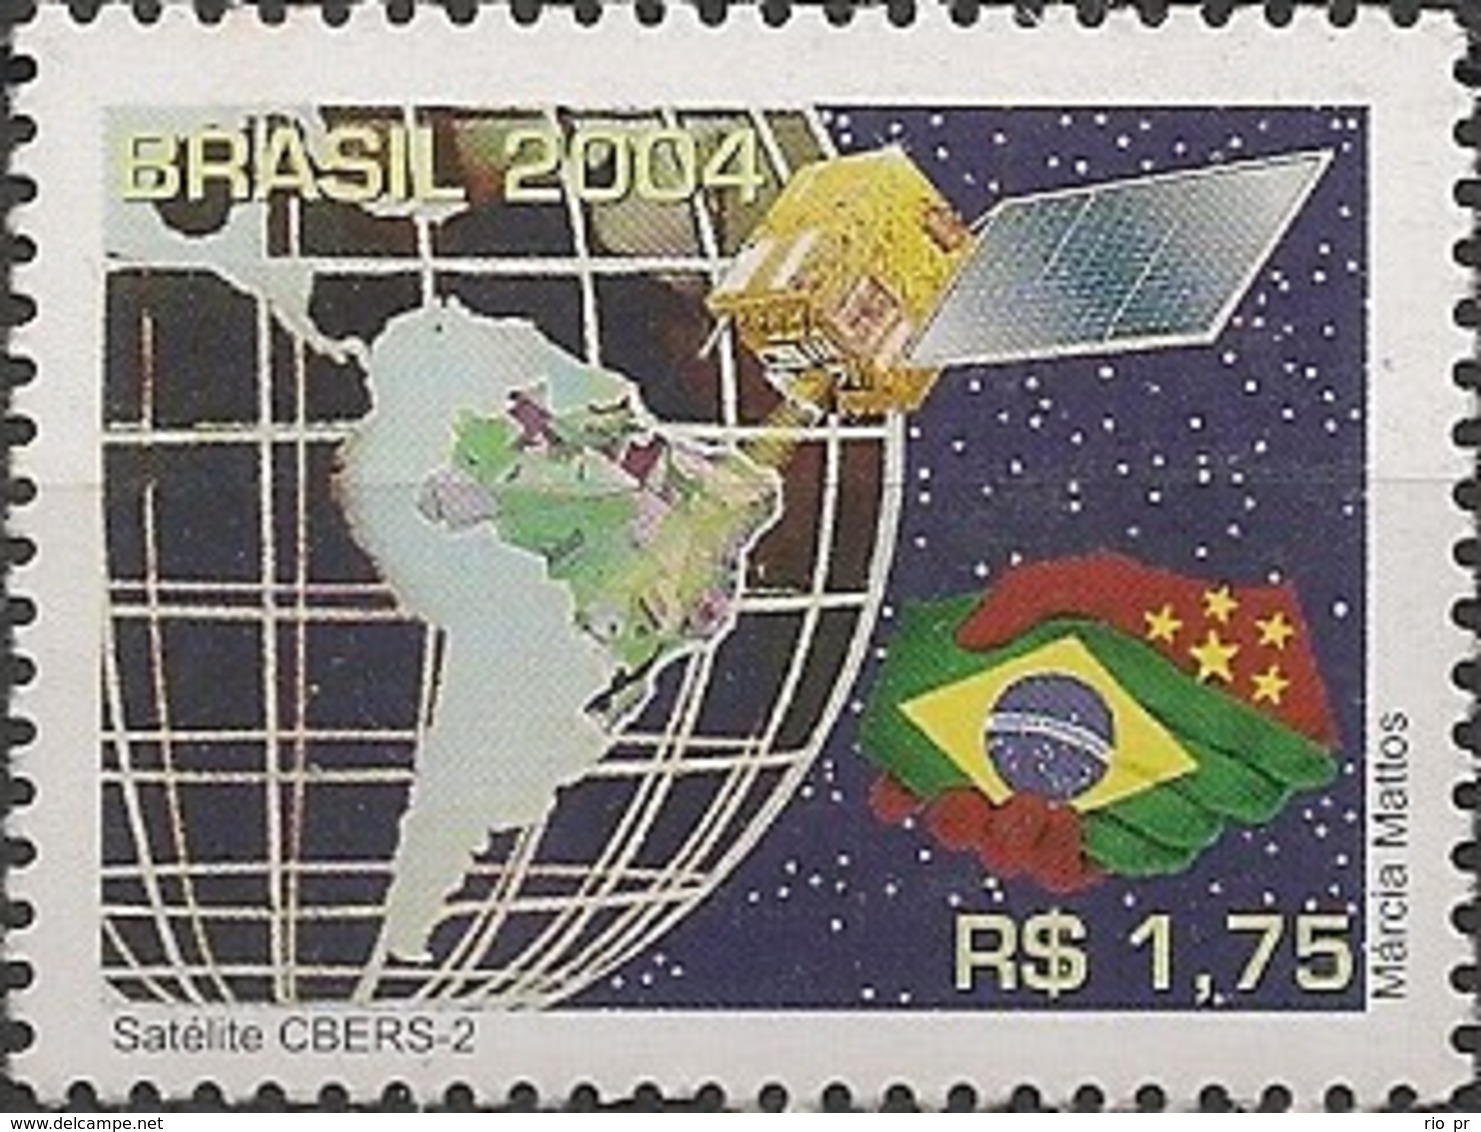 BRAZIL - CBERS-2 SATELLITE 2004 - MNH - Amérique Du Sud